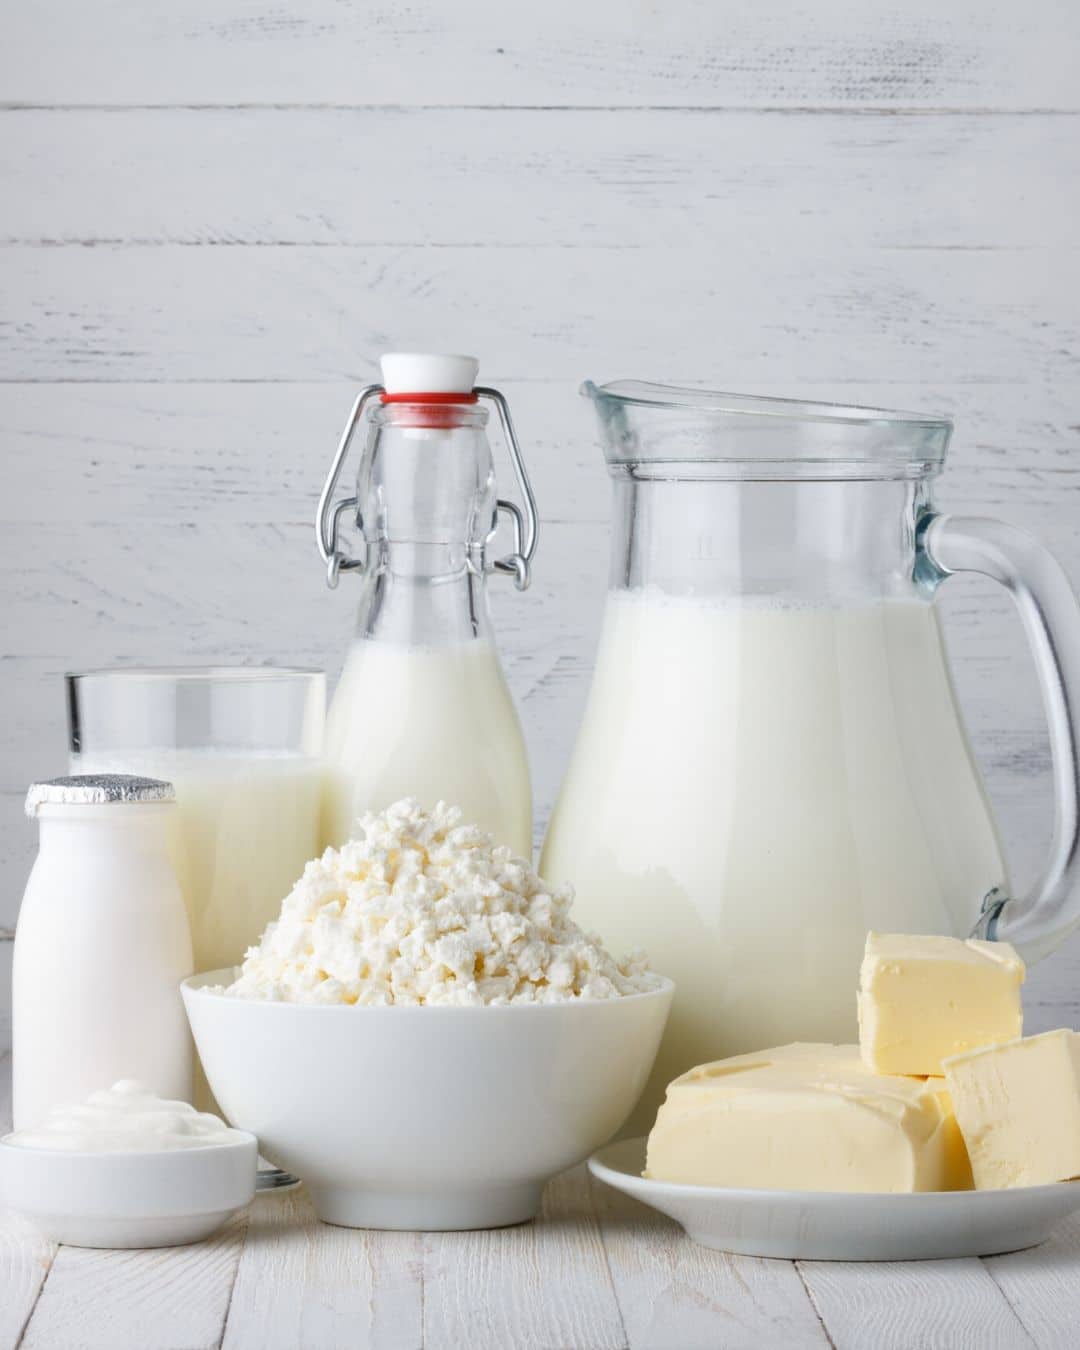 Alergia à proteína do leite